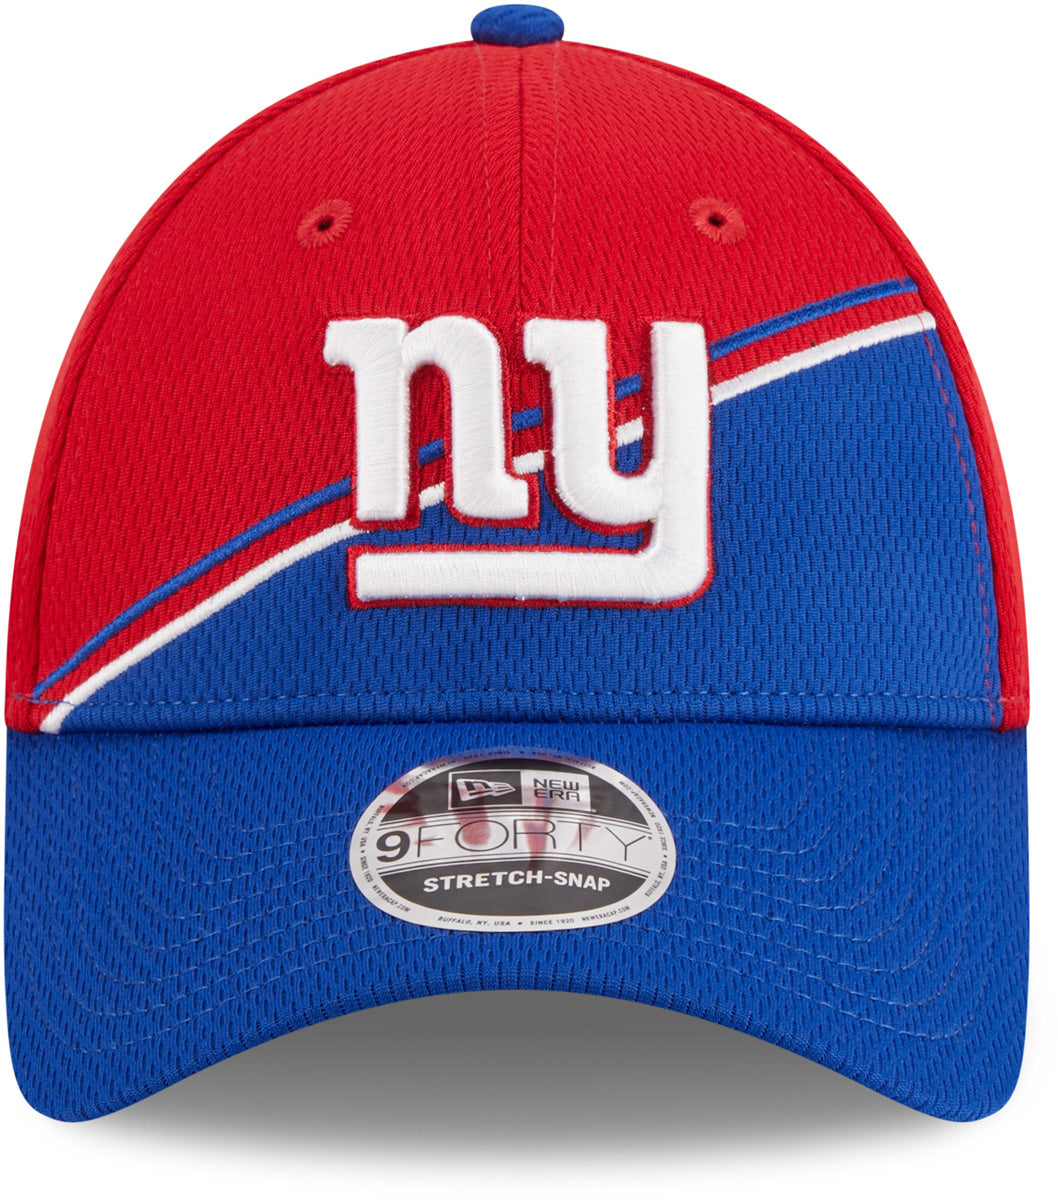 New York Giants Hats, Giants Snapbacks, Sideline Caps